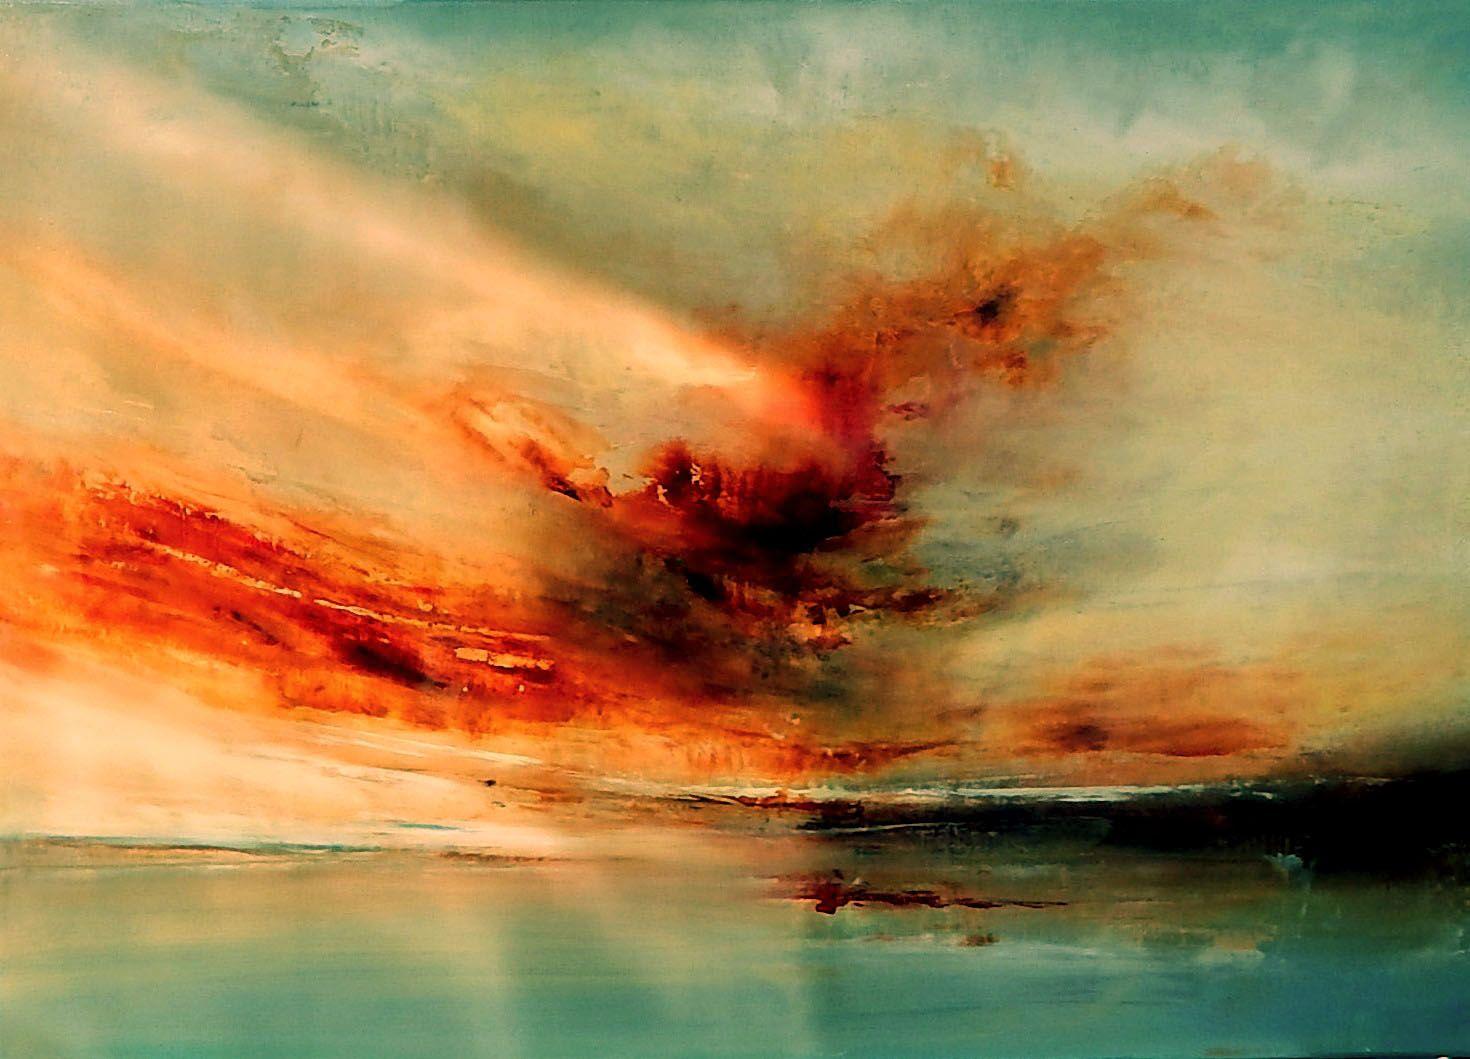 Abstract Painting Olena Topliss - Lorsque les nuages peignent le ciel, peinture à l'huile sur toile